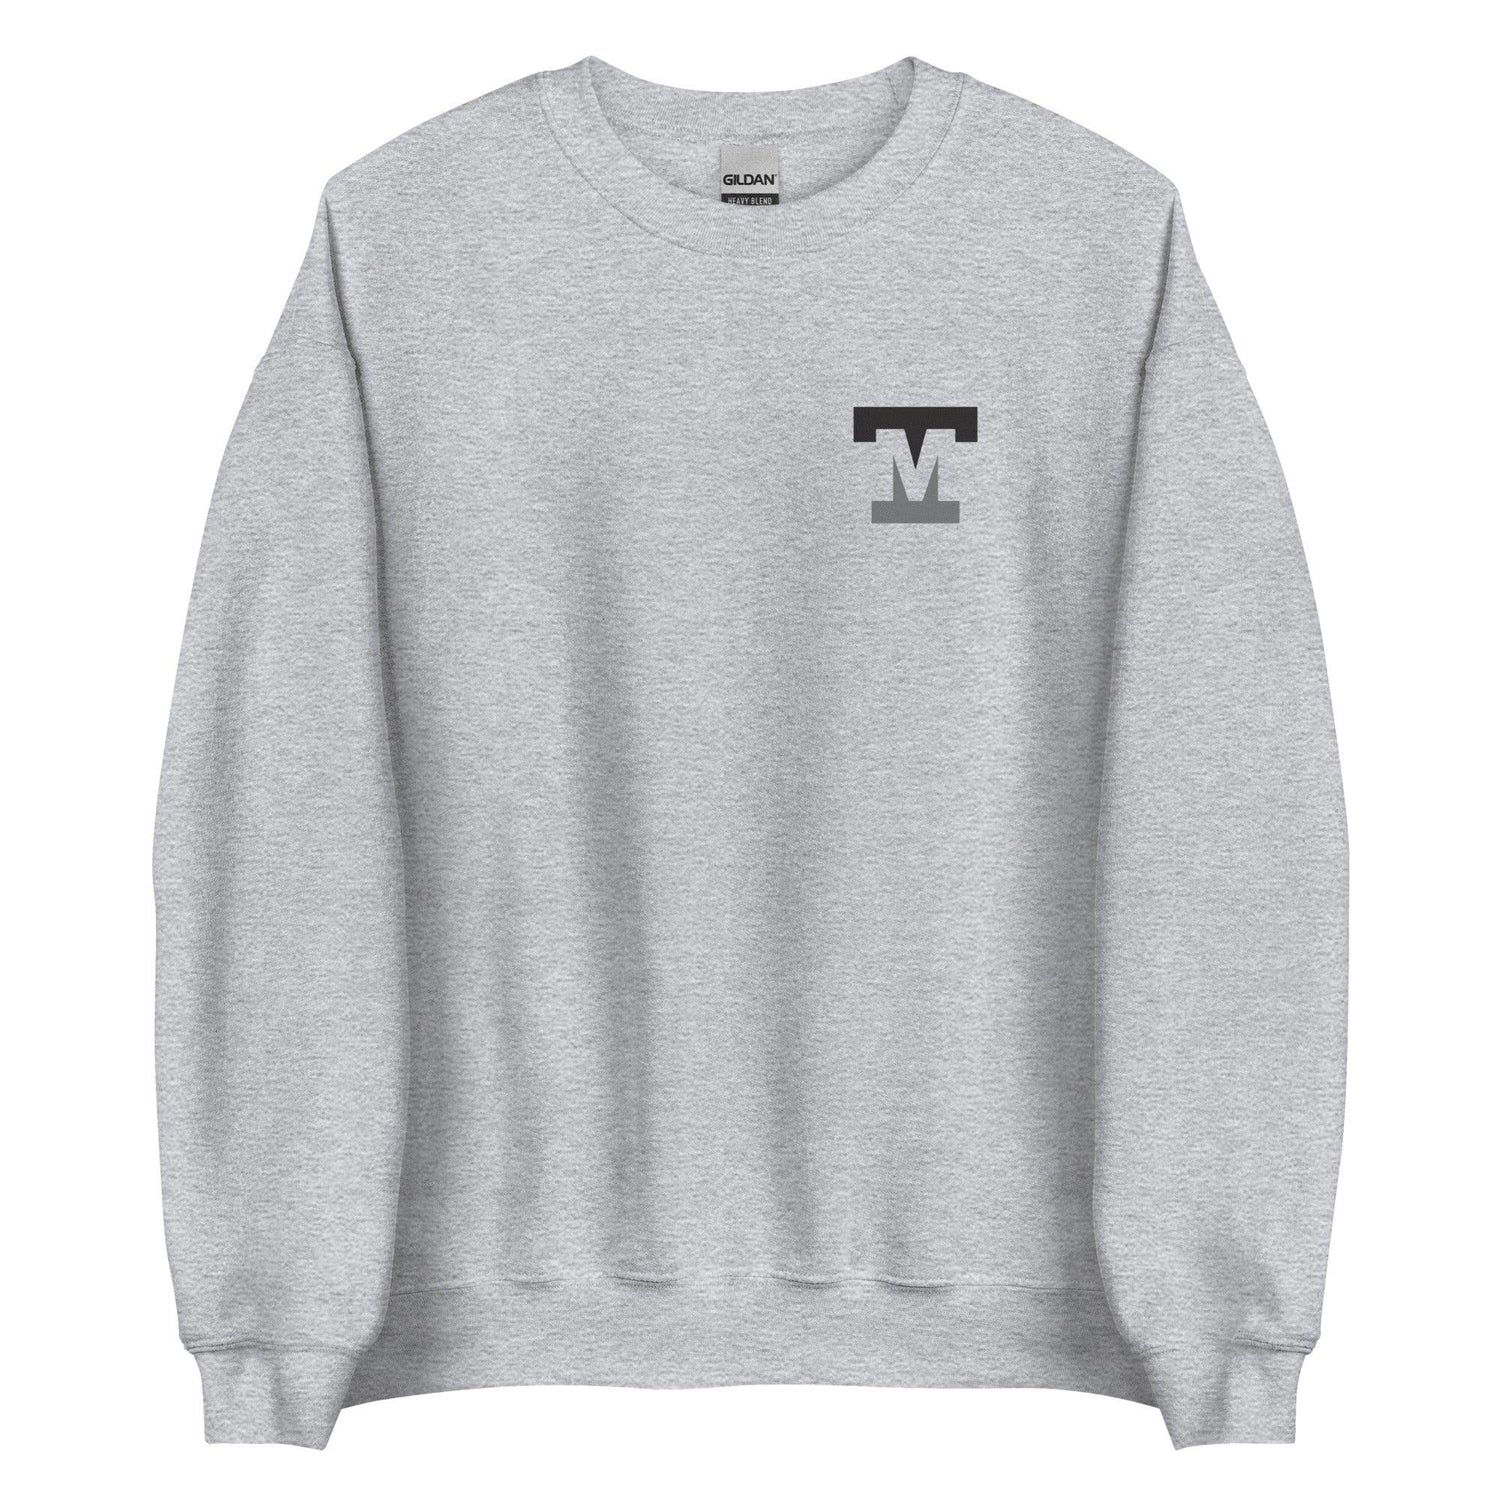 Tanner Mink "Elite" Sweatshirt - Fan Arch